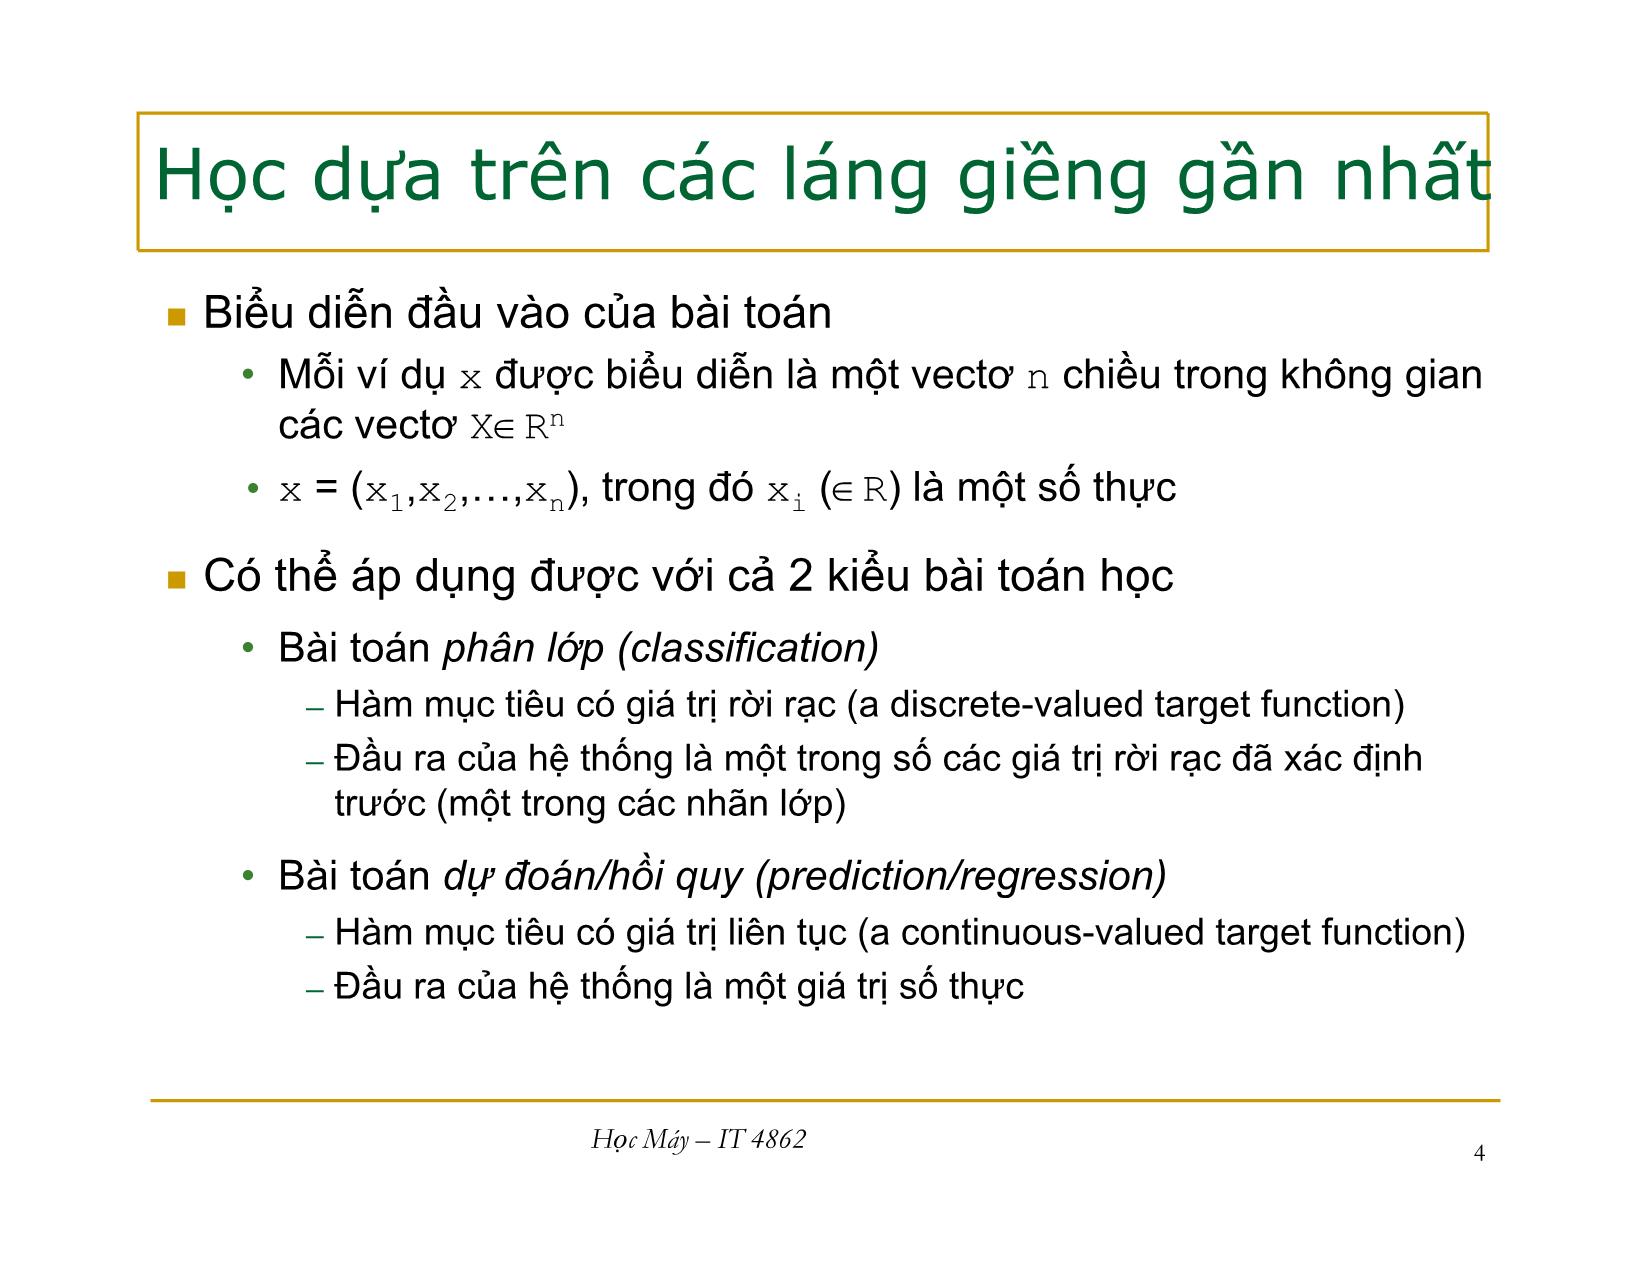 Bài giảng Học máy - Bài 5: Học dựa trên các láng giềng gần nhất - Nguyễn Nhật Quang trang 4